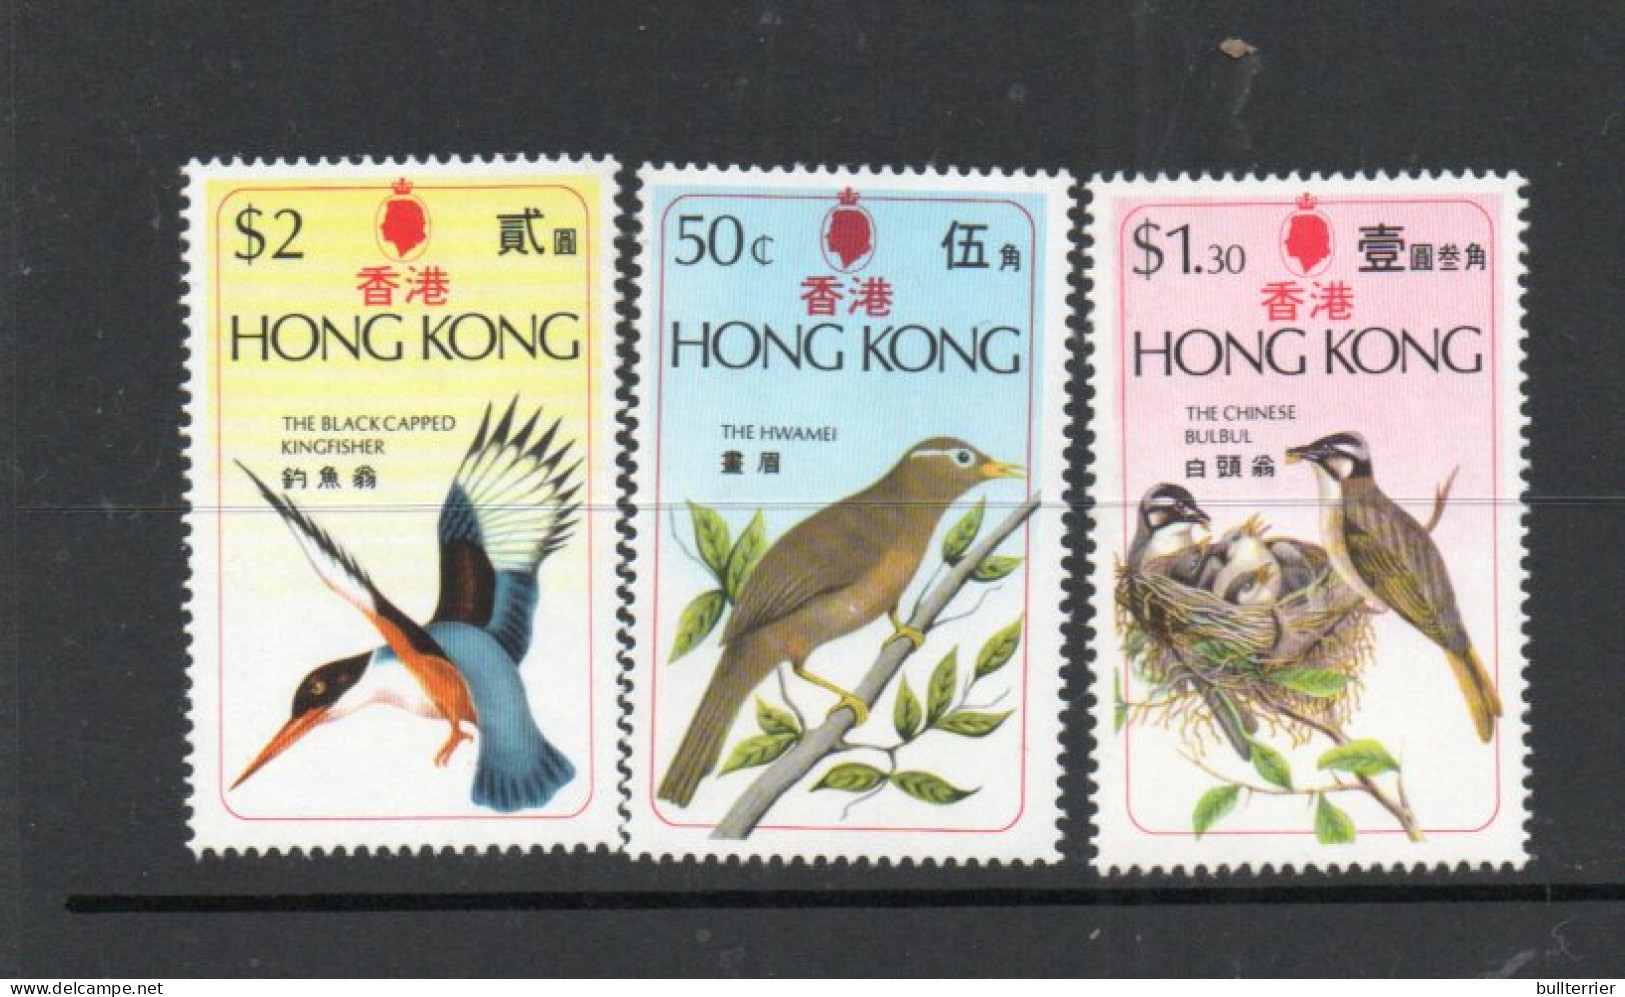 BIRDS - HONG KONG  - 1975- BIRDS SET OF 3  MINT NEVER HINGED, SG CAT £17 - Hühnervögel & Fasanen